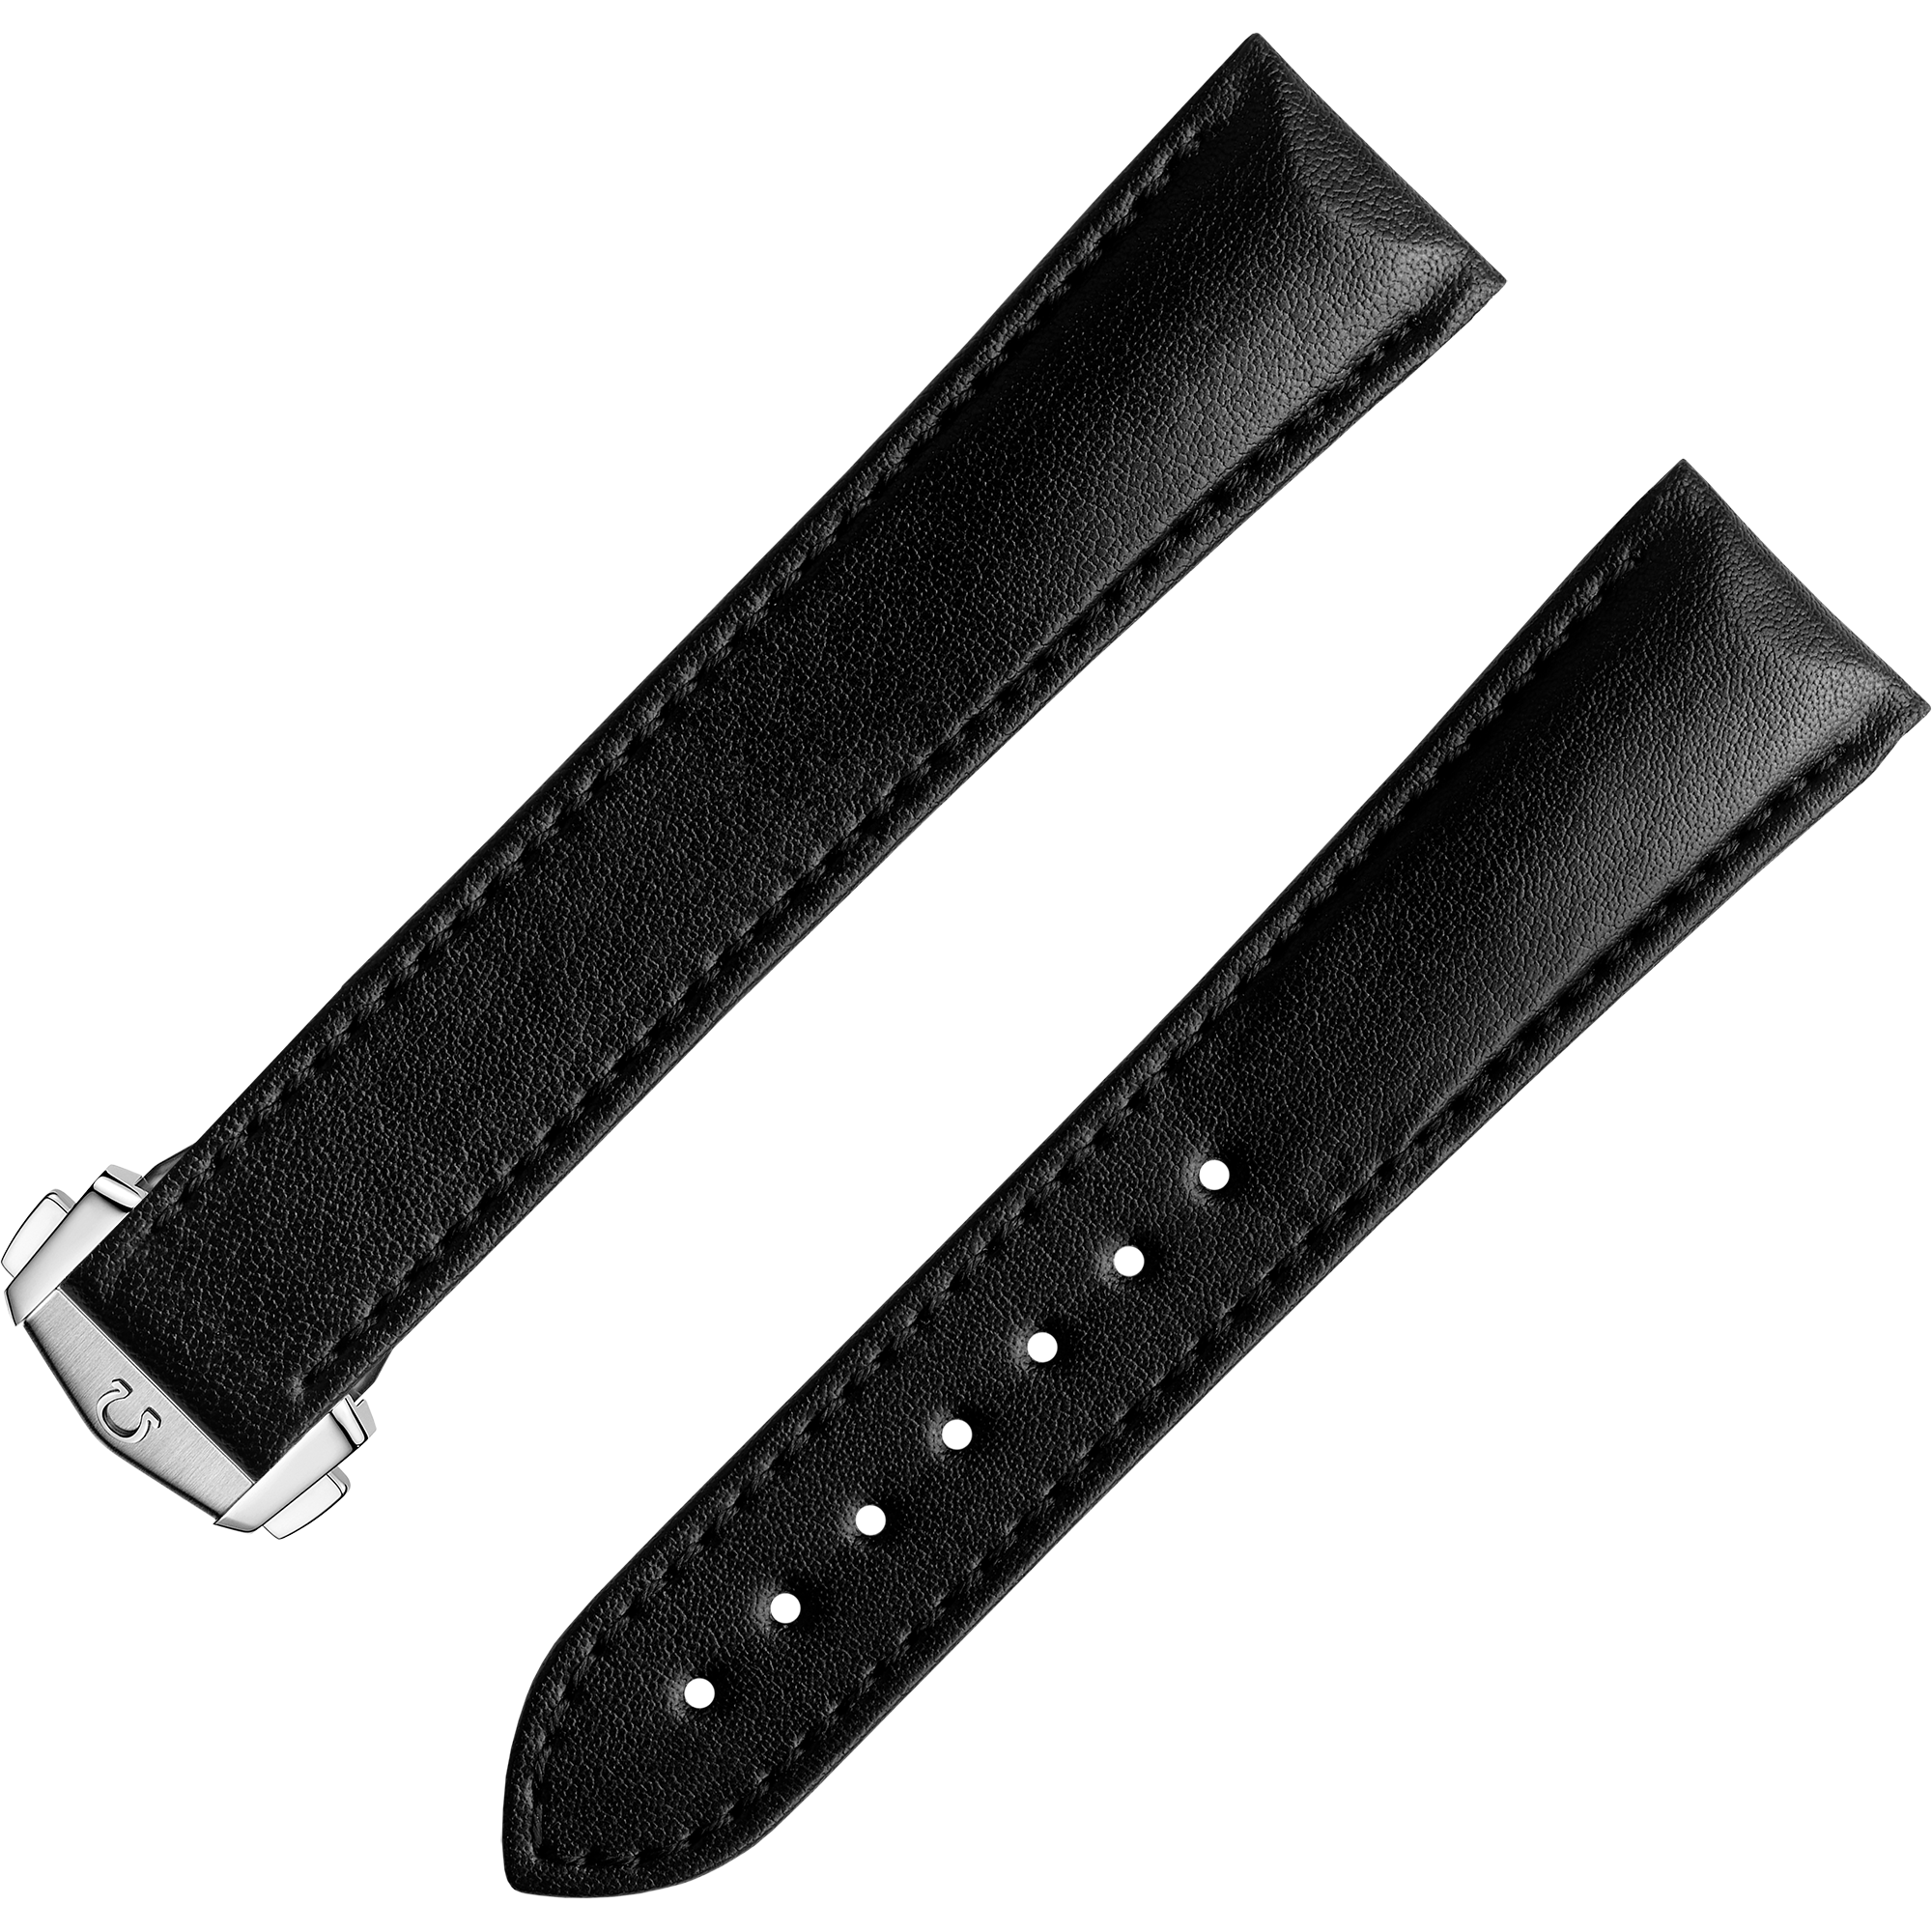 Bracelet deux pièces - Bracelet végane noir avec boucle déployante - 032Z017135